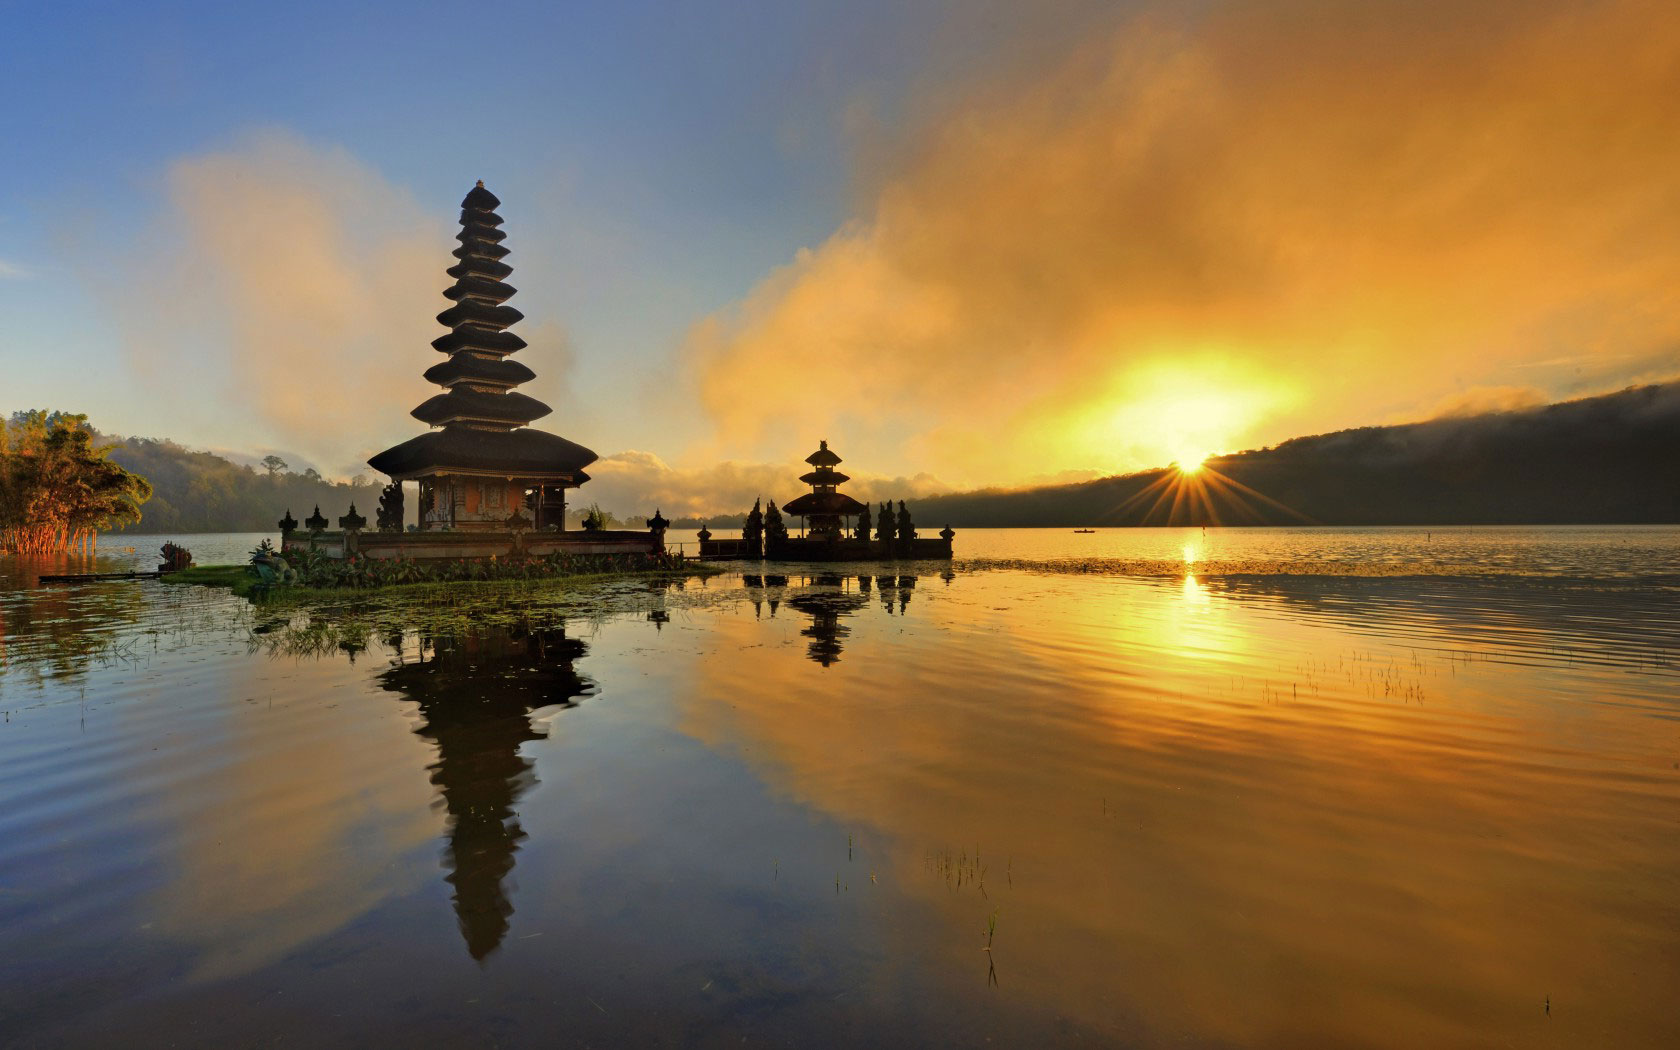 Kebun Raya Bali Lake View Spot , HD Wallpaper & Backgrounds